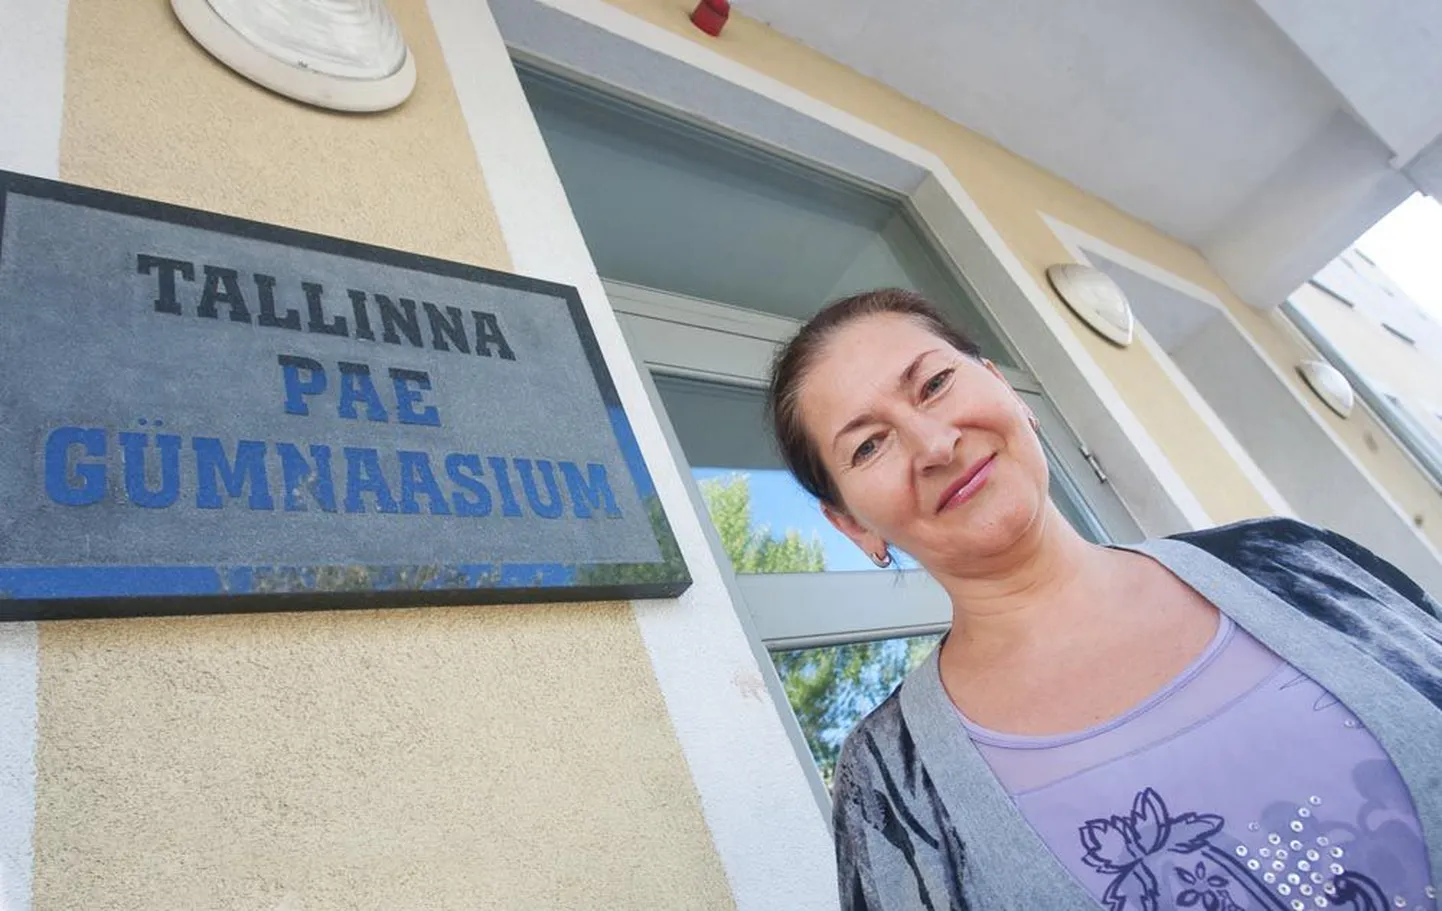 Директор Таллиннской Паэ гимназии Изабелла Рийтсар.